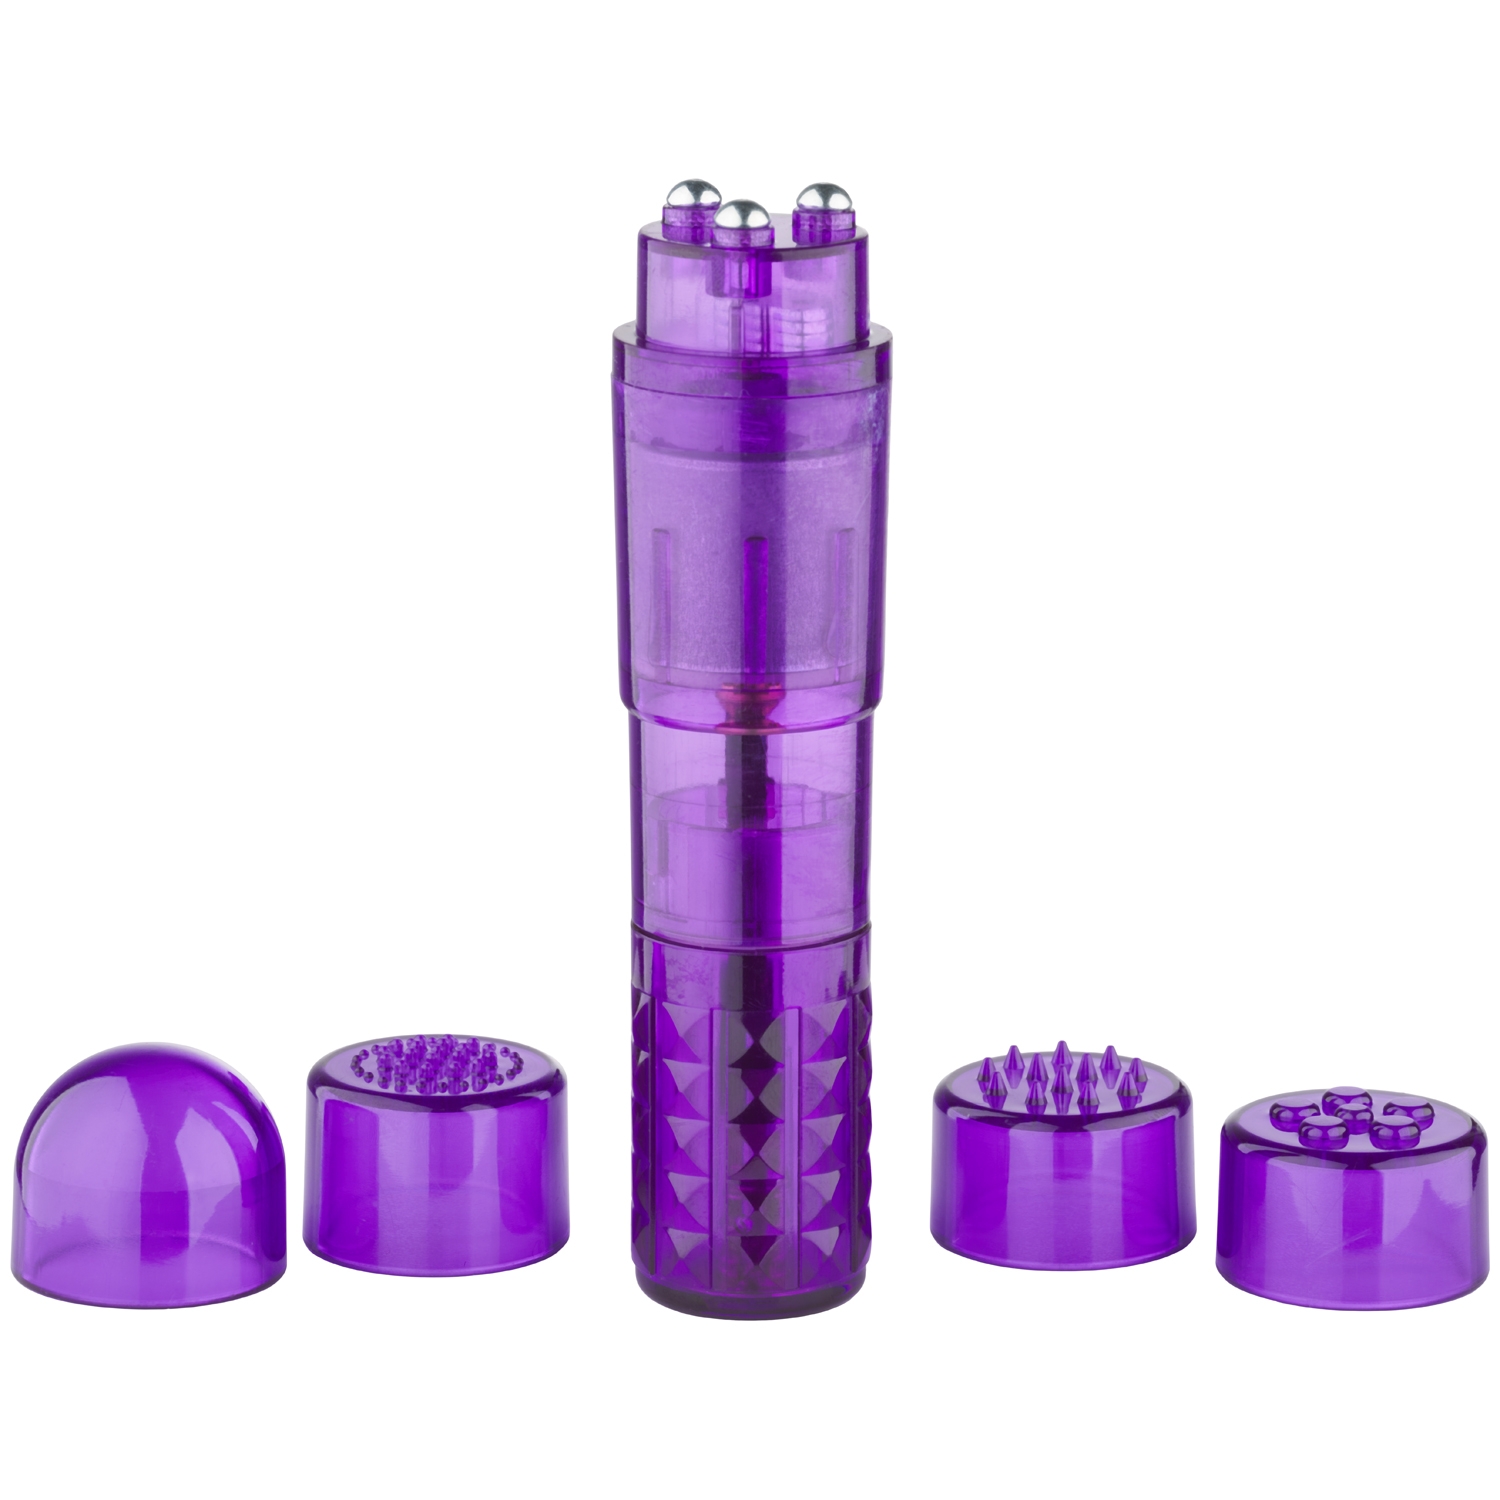 baseks Power Pocket Klitorisvibrator - Lila | Vibratorer//Favoriter//Kvinnor//Mini Vibrator//Baseks//Klitorisvibrator//baseks Vibratorer//Färgglada Vibratorer//Lila Vibratorer//3 för 249:-//Priser från 49 kr | Intimast